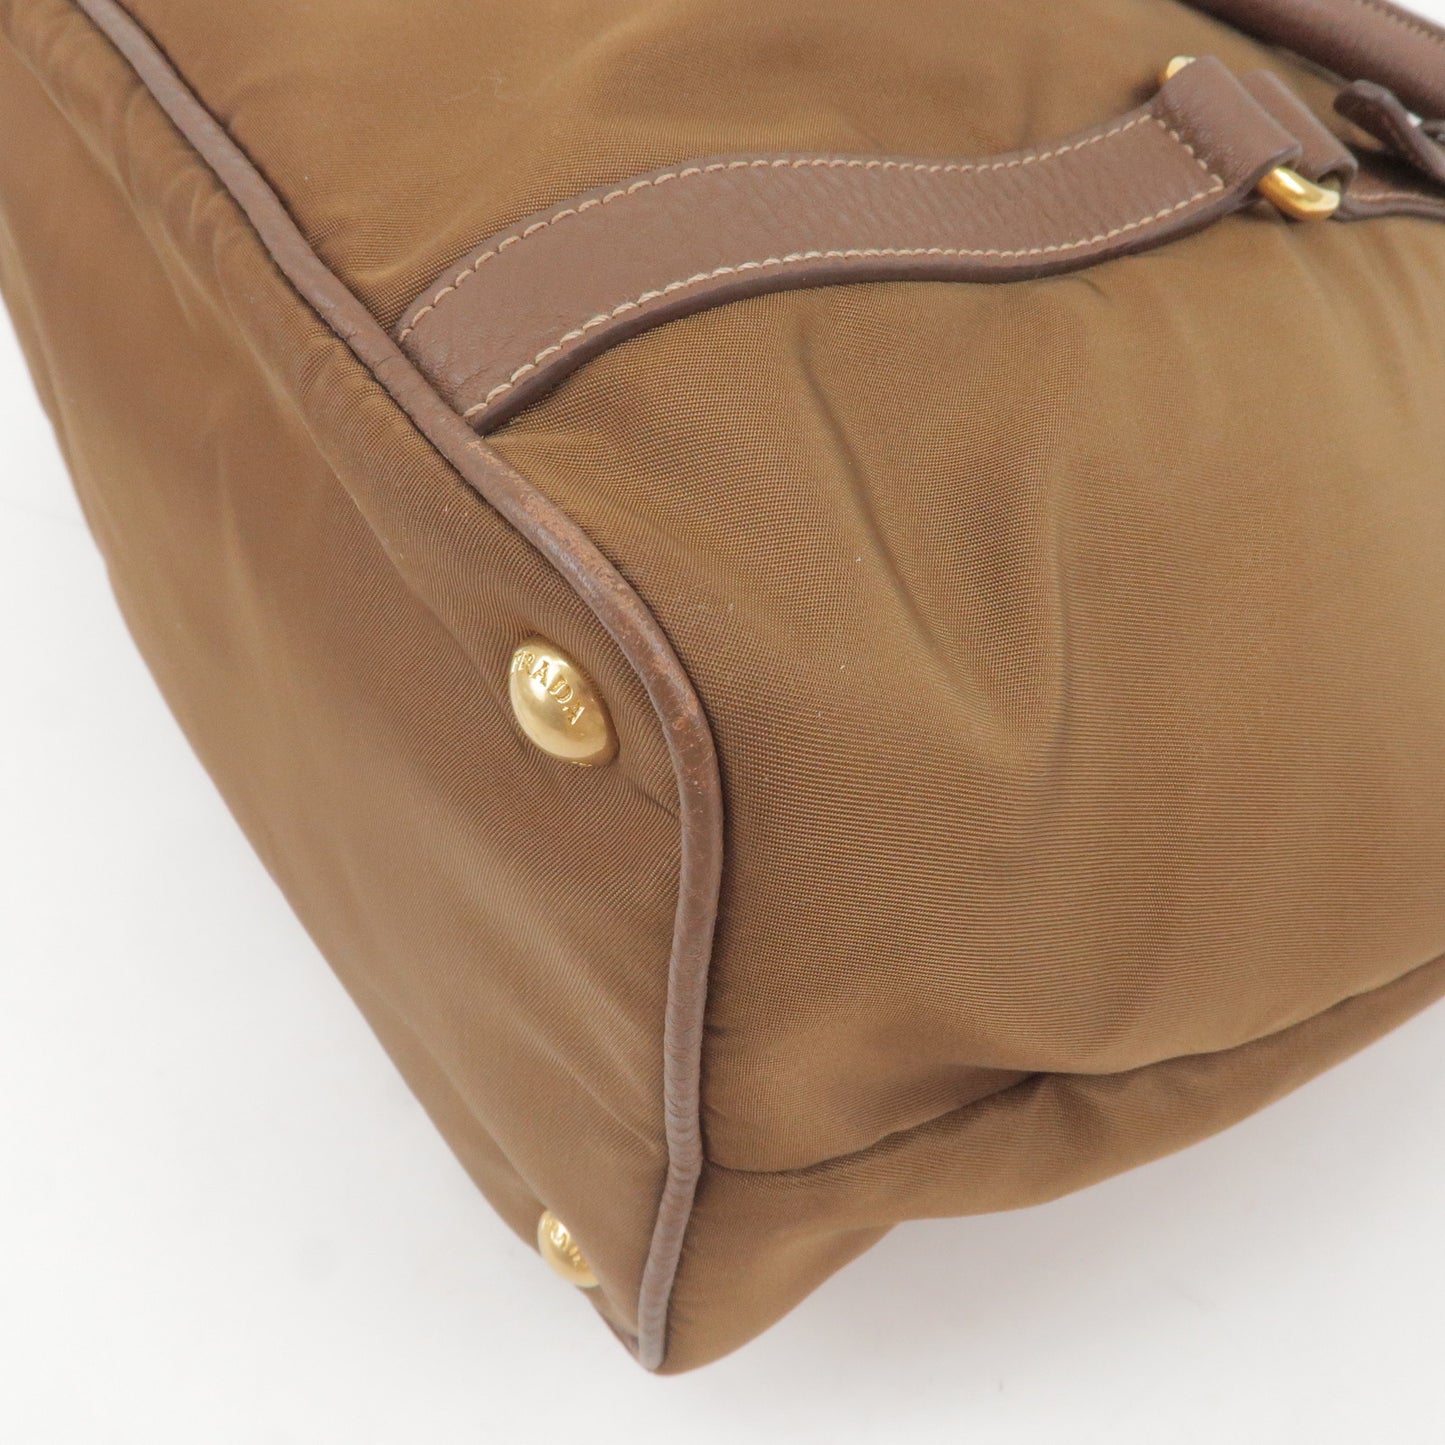 PRADA Logo Nylon Leather 2Way Bag Hand Bag Brown BR4993